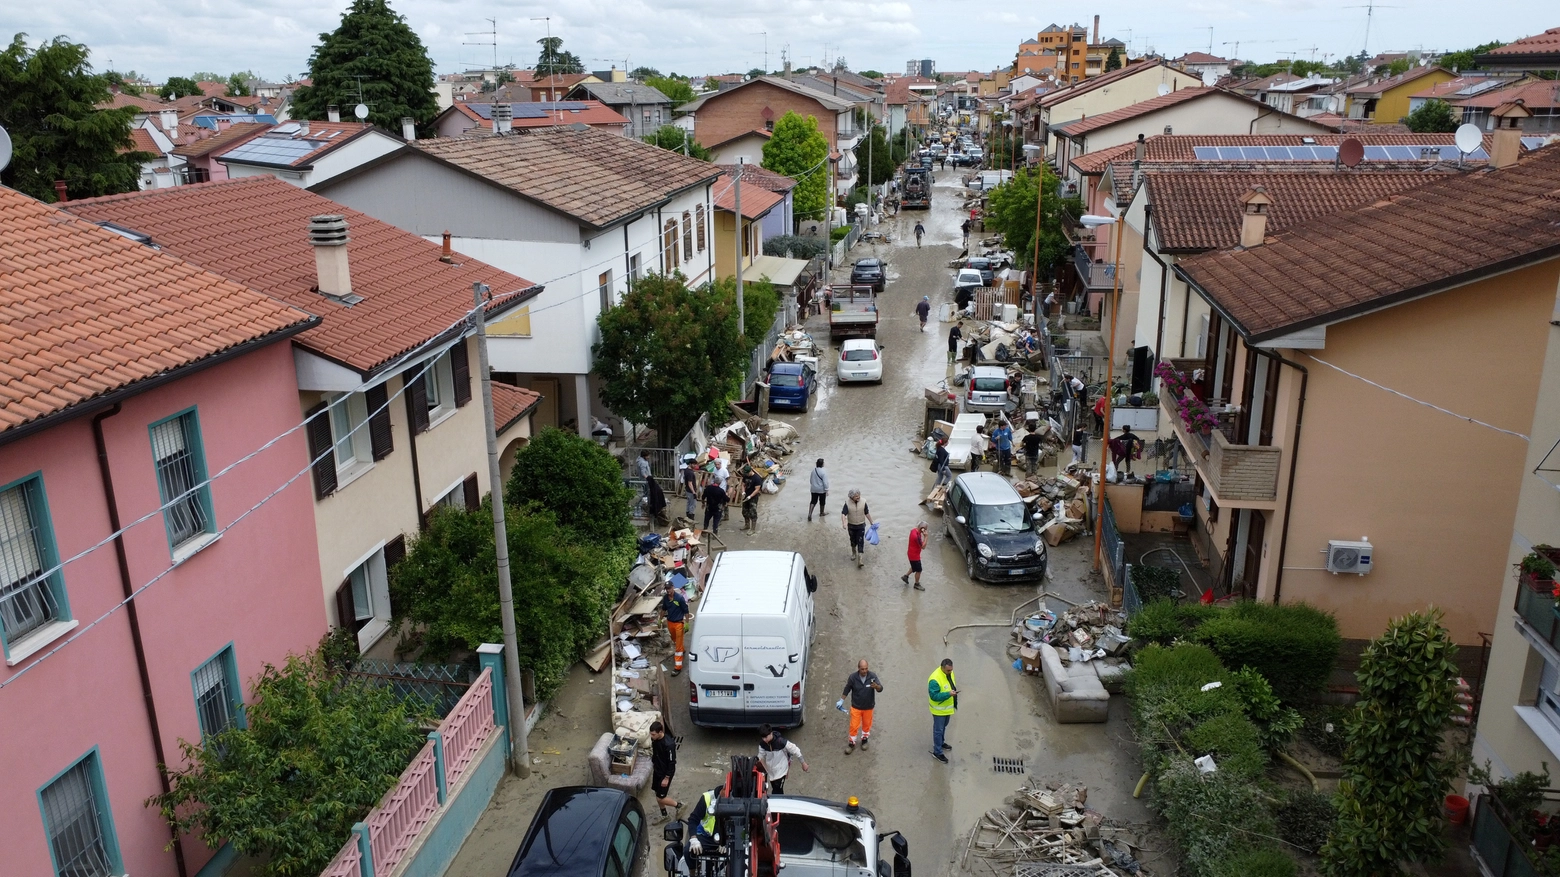 Le conseguenze dell'alluvione a Cesena viste dall'alto